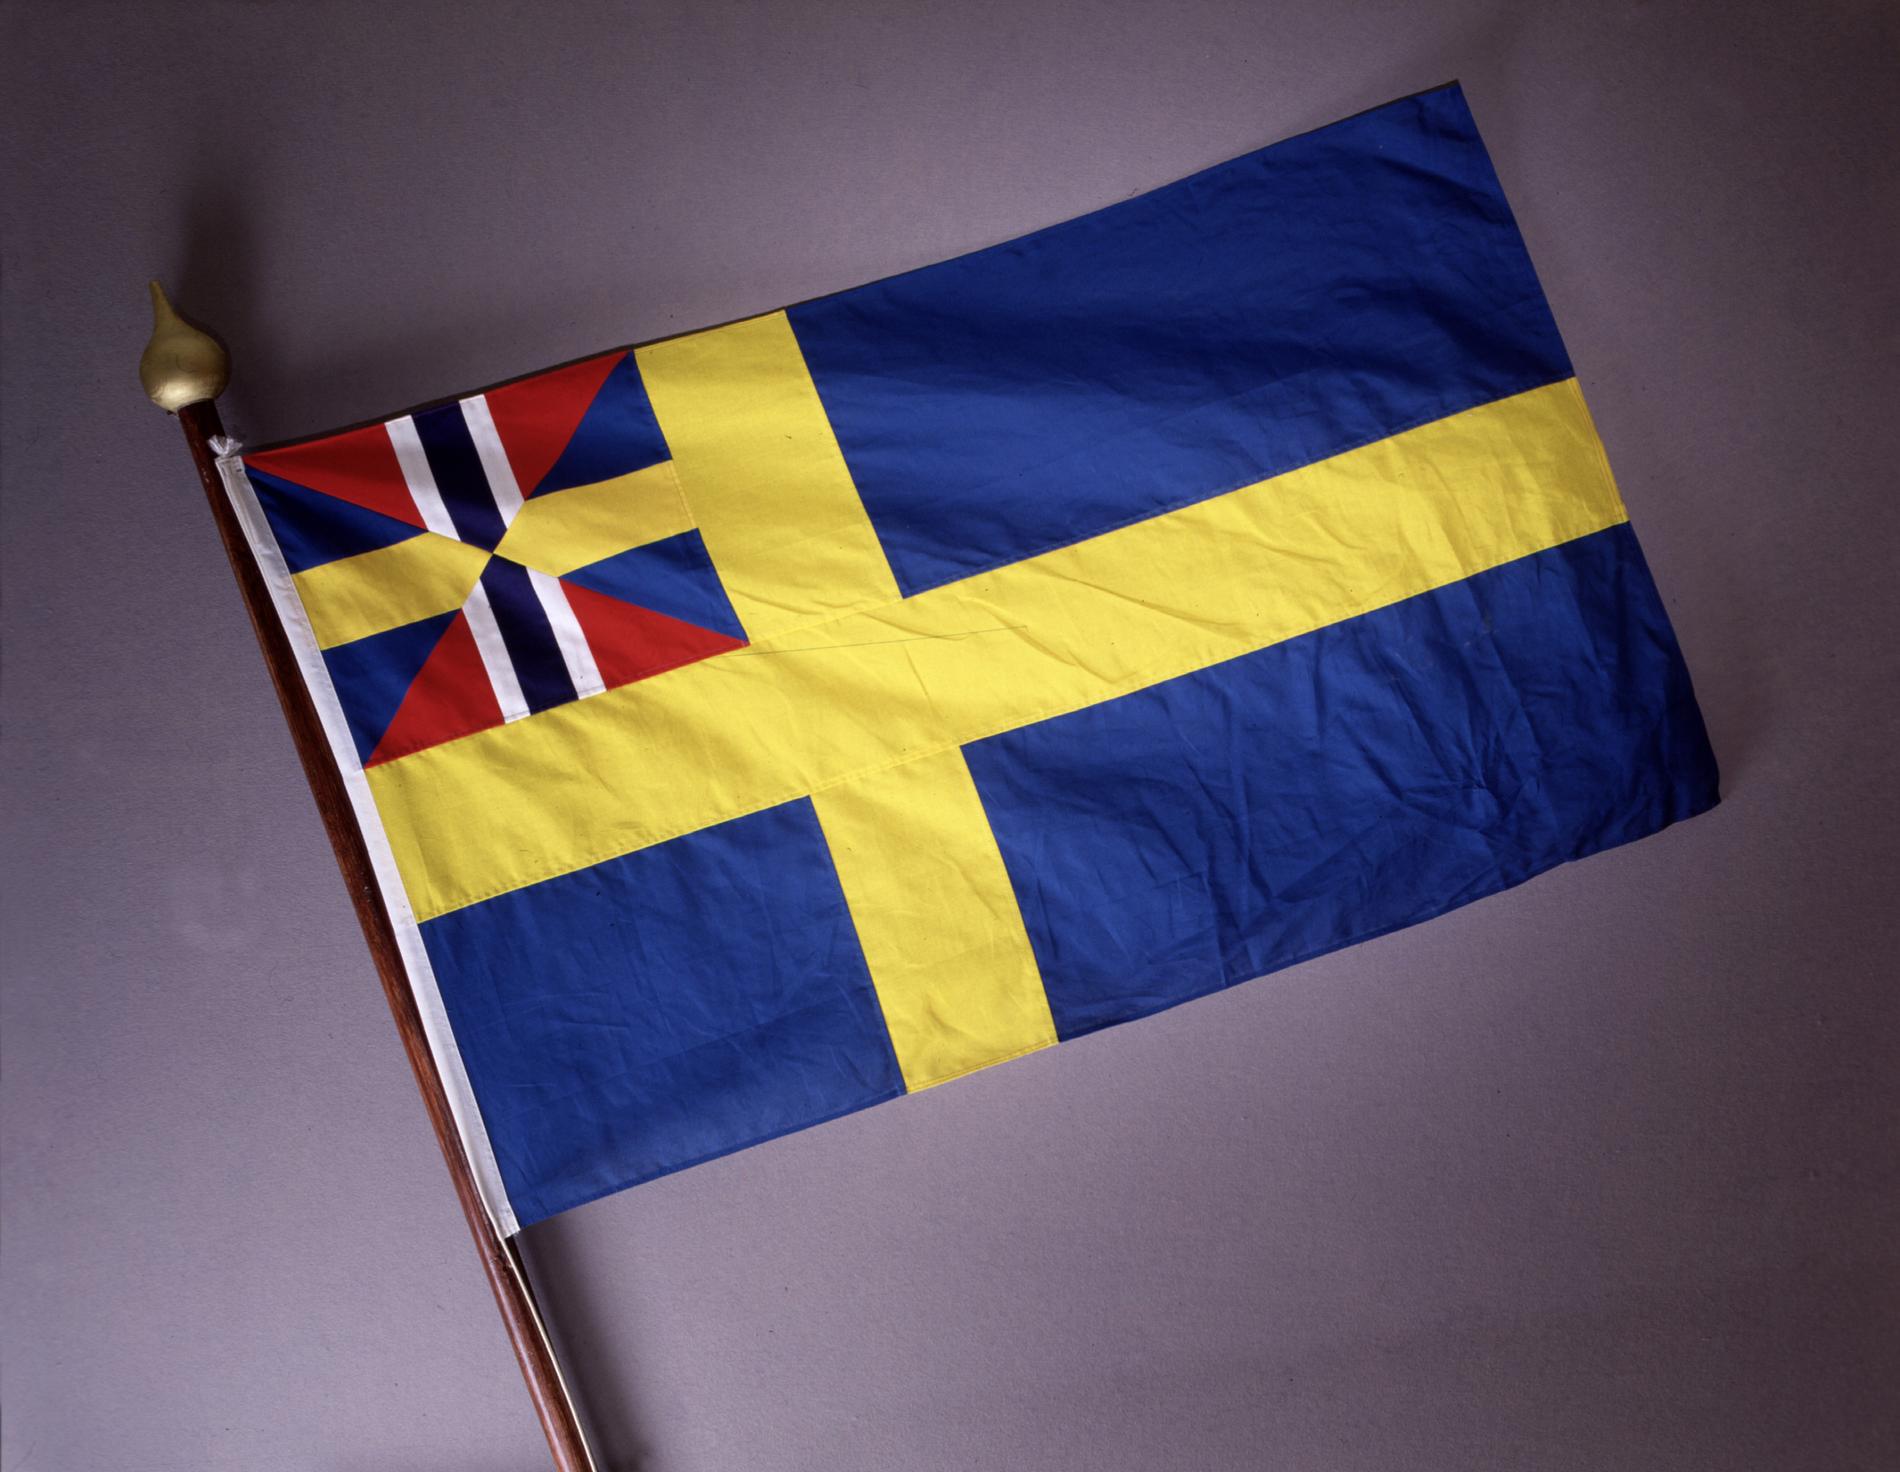 ”Plötsligt framstår Sverige som Gökboet”